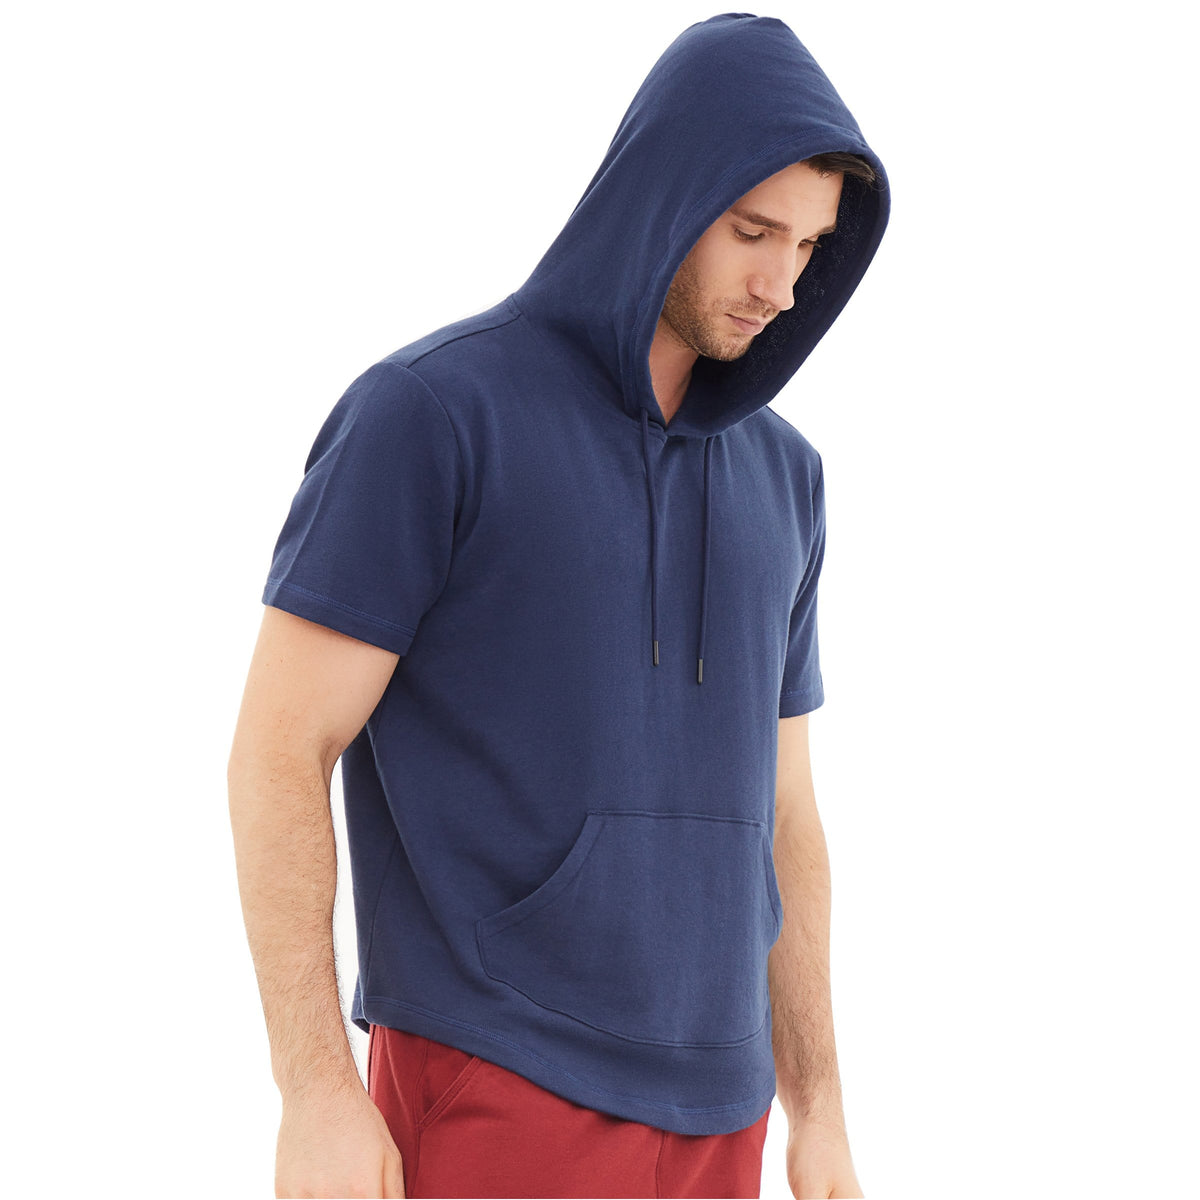 Men's Kingsnake Short Sleeved Hooded Shirt – The Hooder